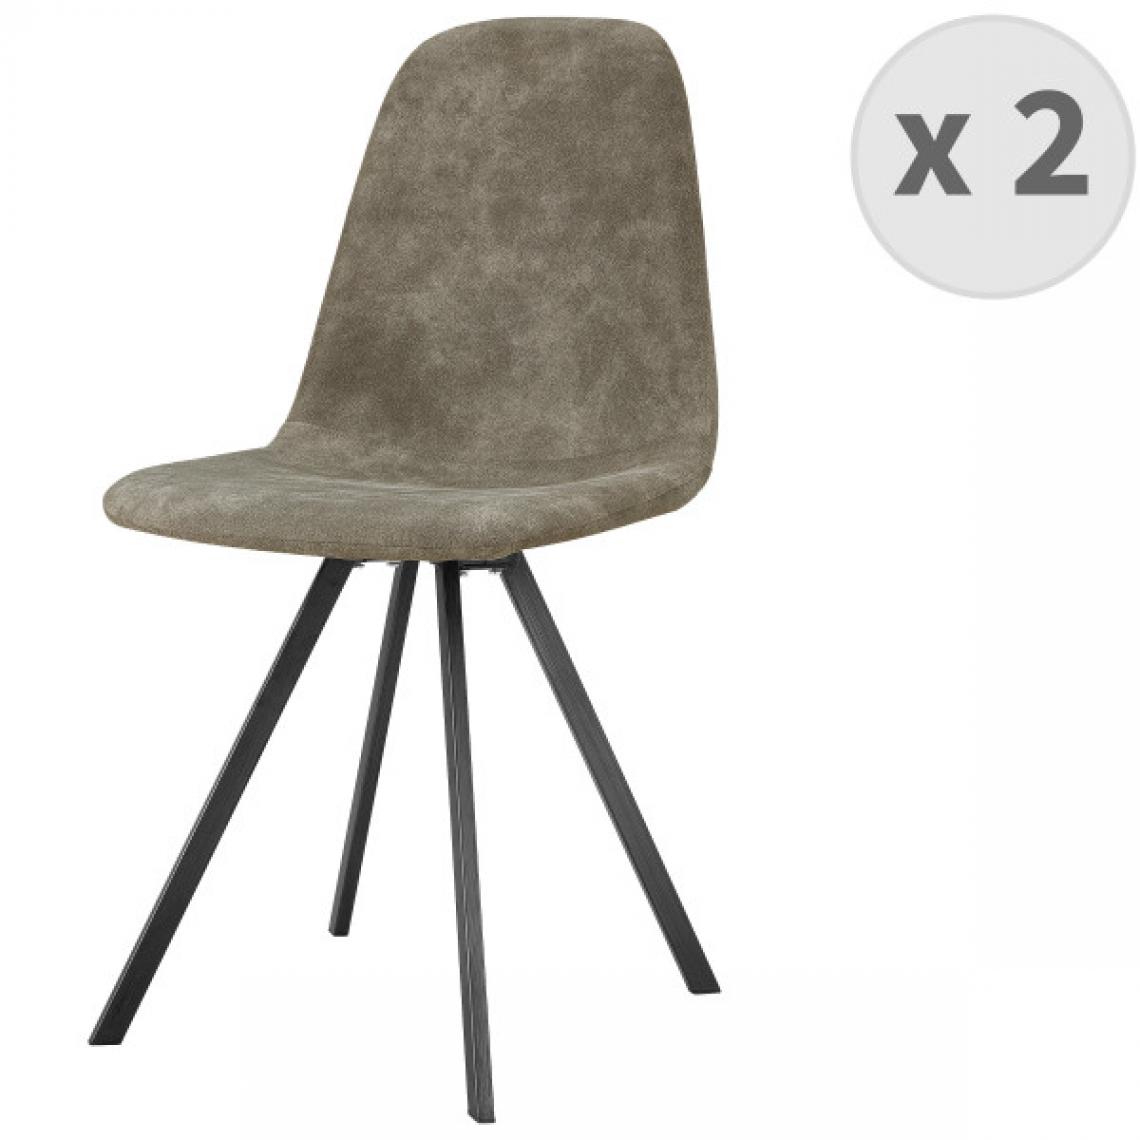 Moloo - ATLANTA-Chaise industrielle microfibre brun clair vintage pieds noirs (x2) - Chaises